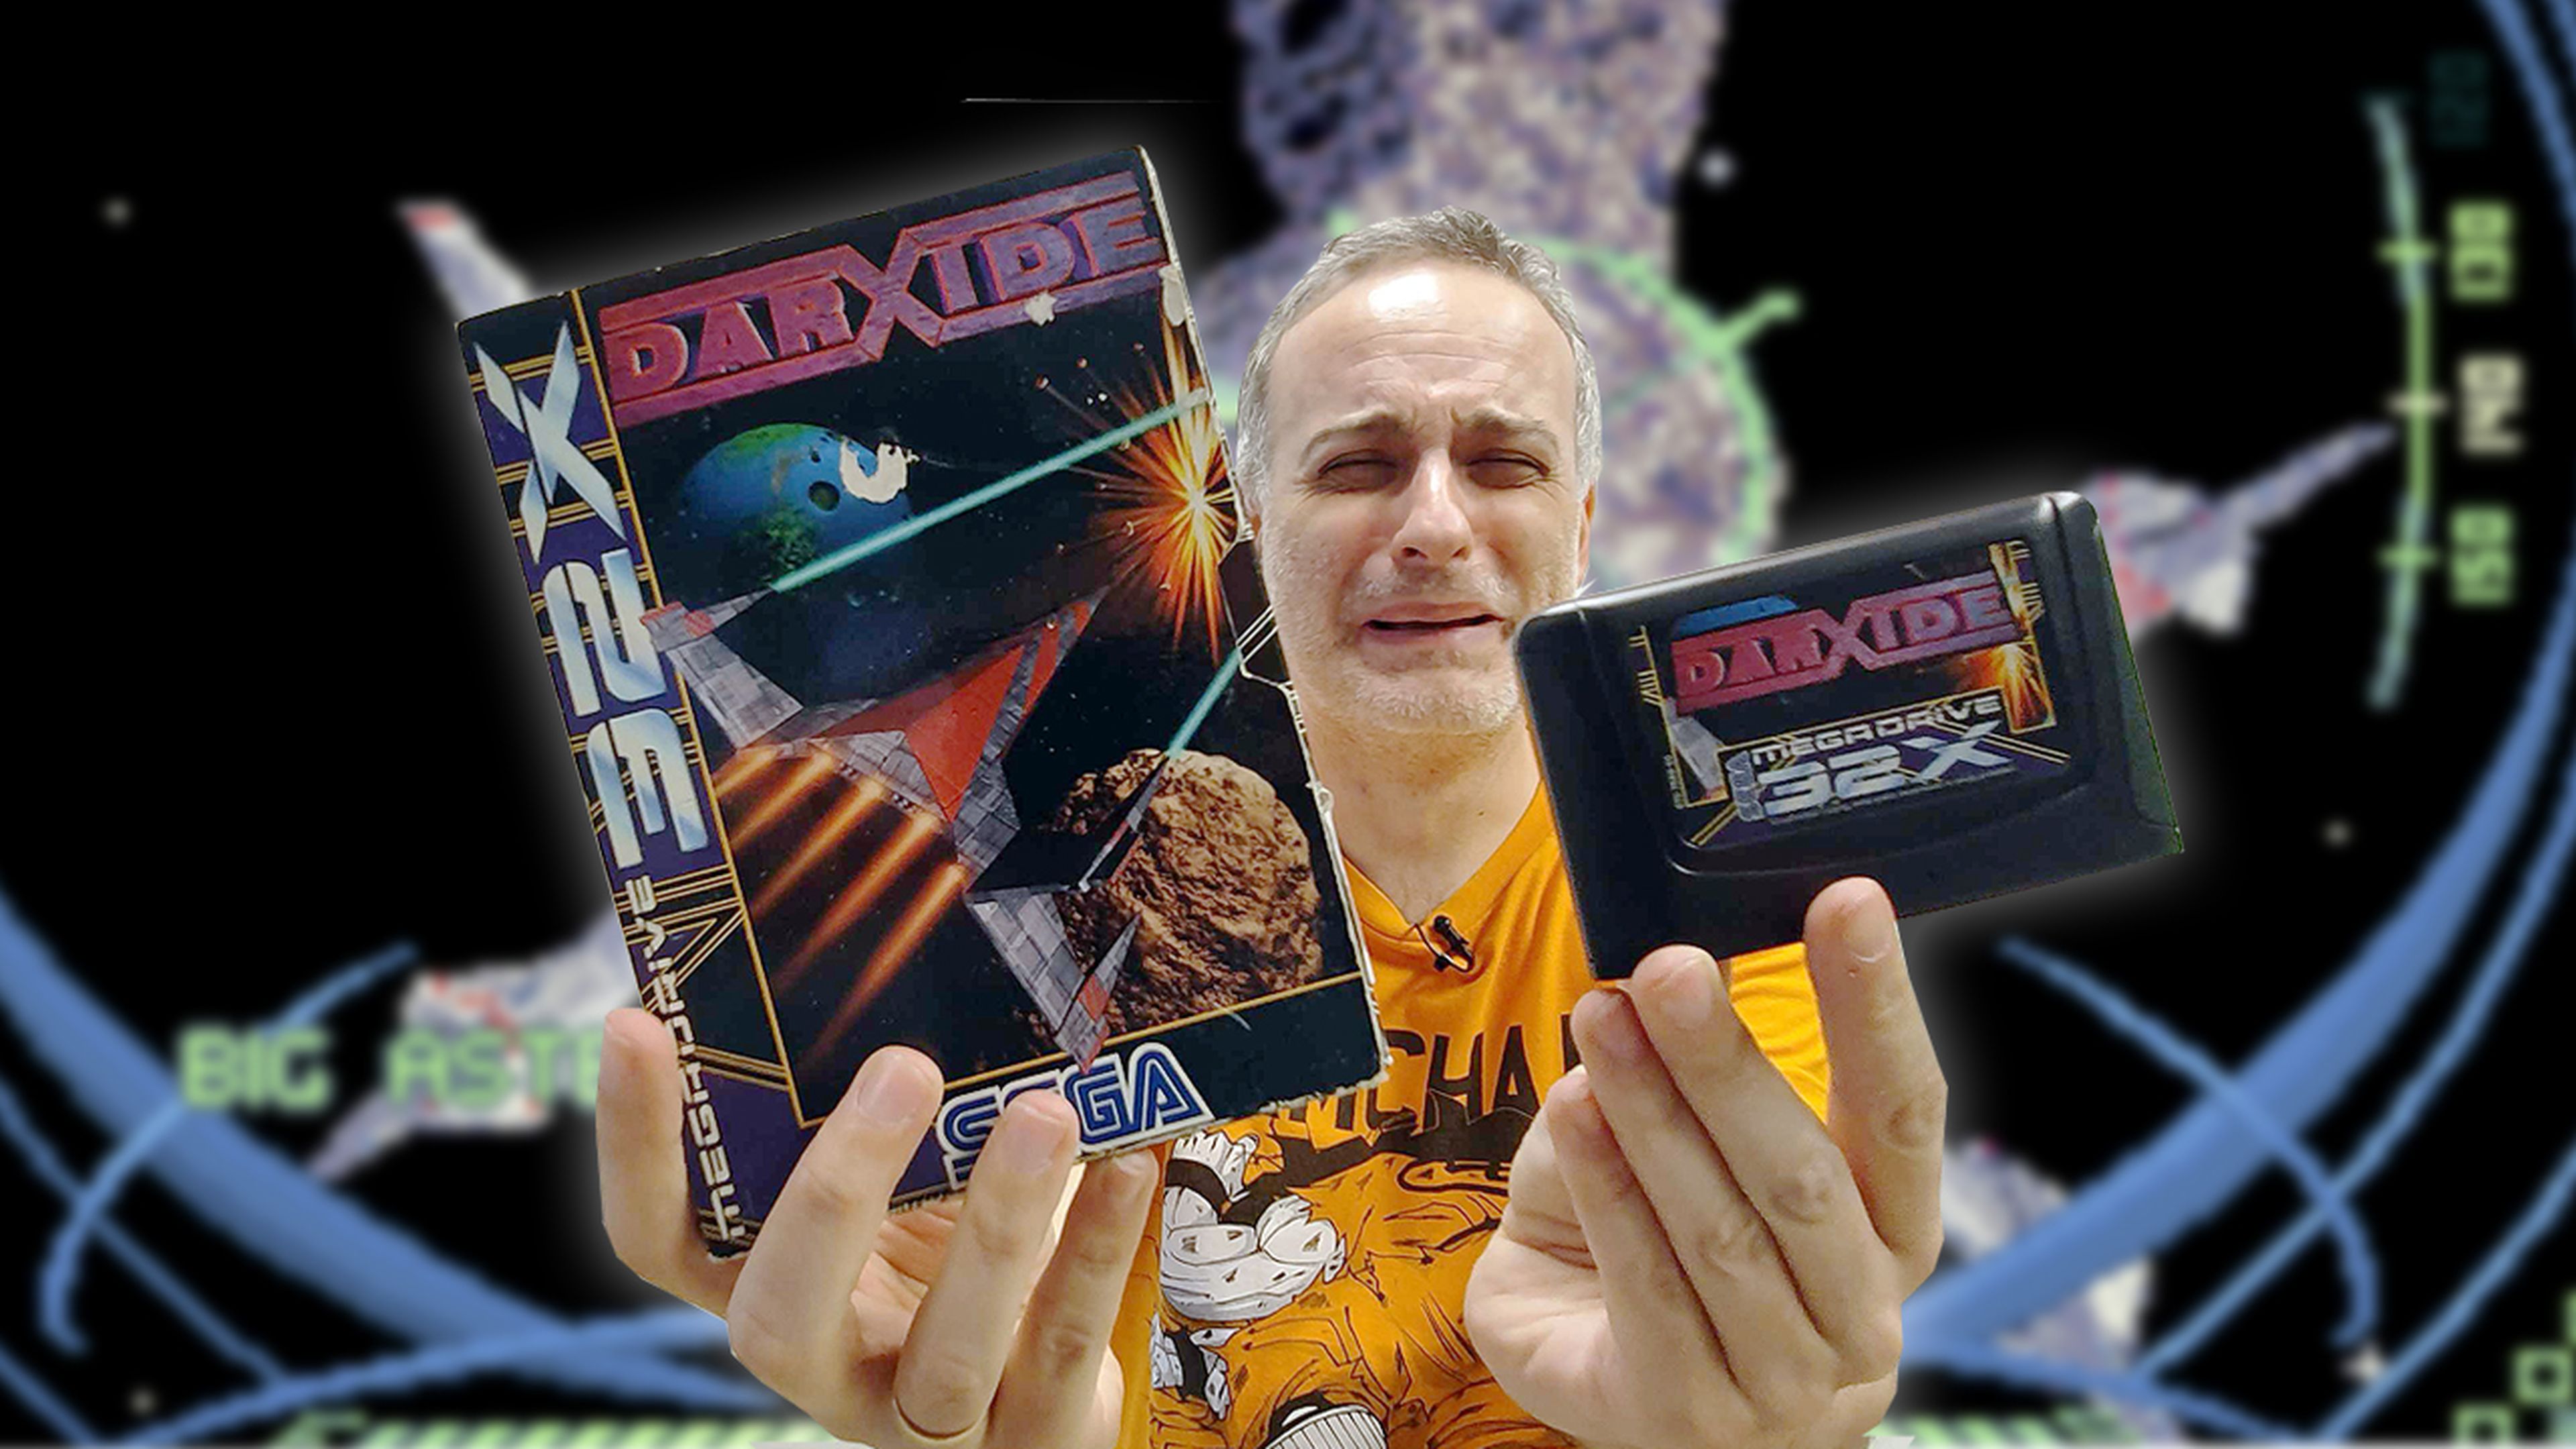 Darxide - El Santo Grial de Mega Drive 32X